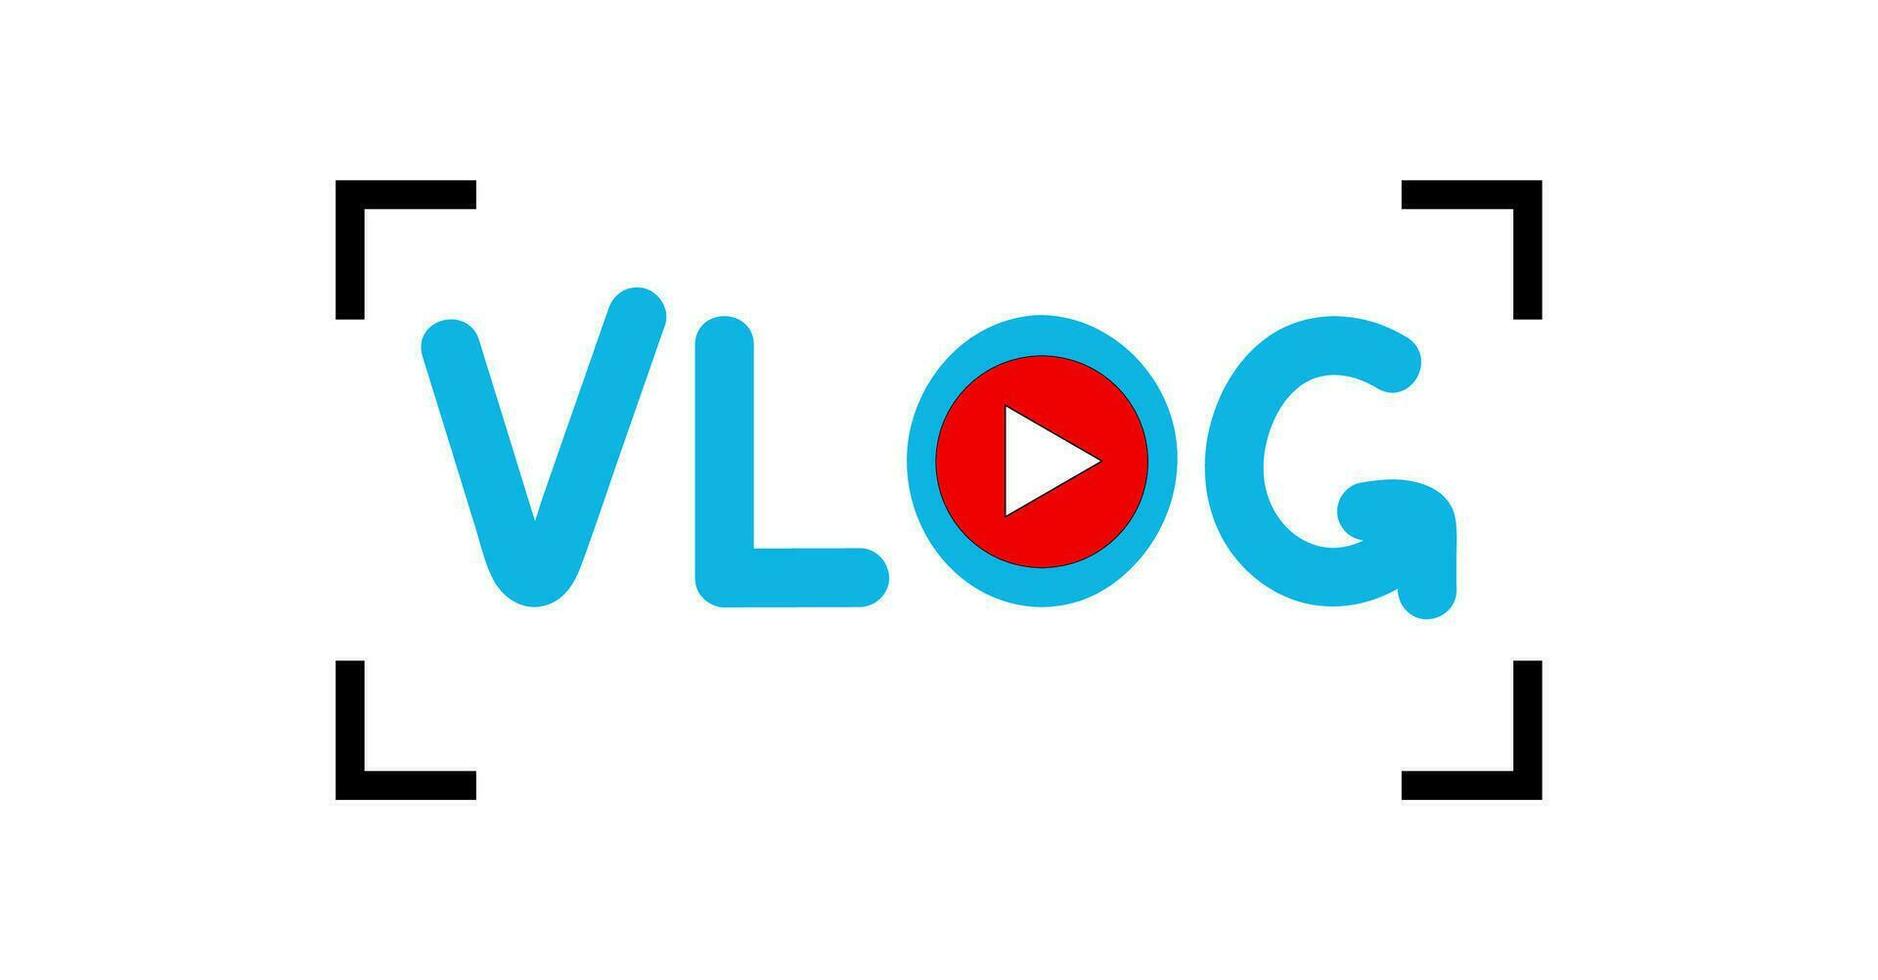 vídeo canal insignias vector ilustraciones, transmitir vlog logo, plano estilo, Blog, radiodifusión multimedia fuente con antiguo pasado de moda mic vector.